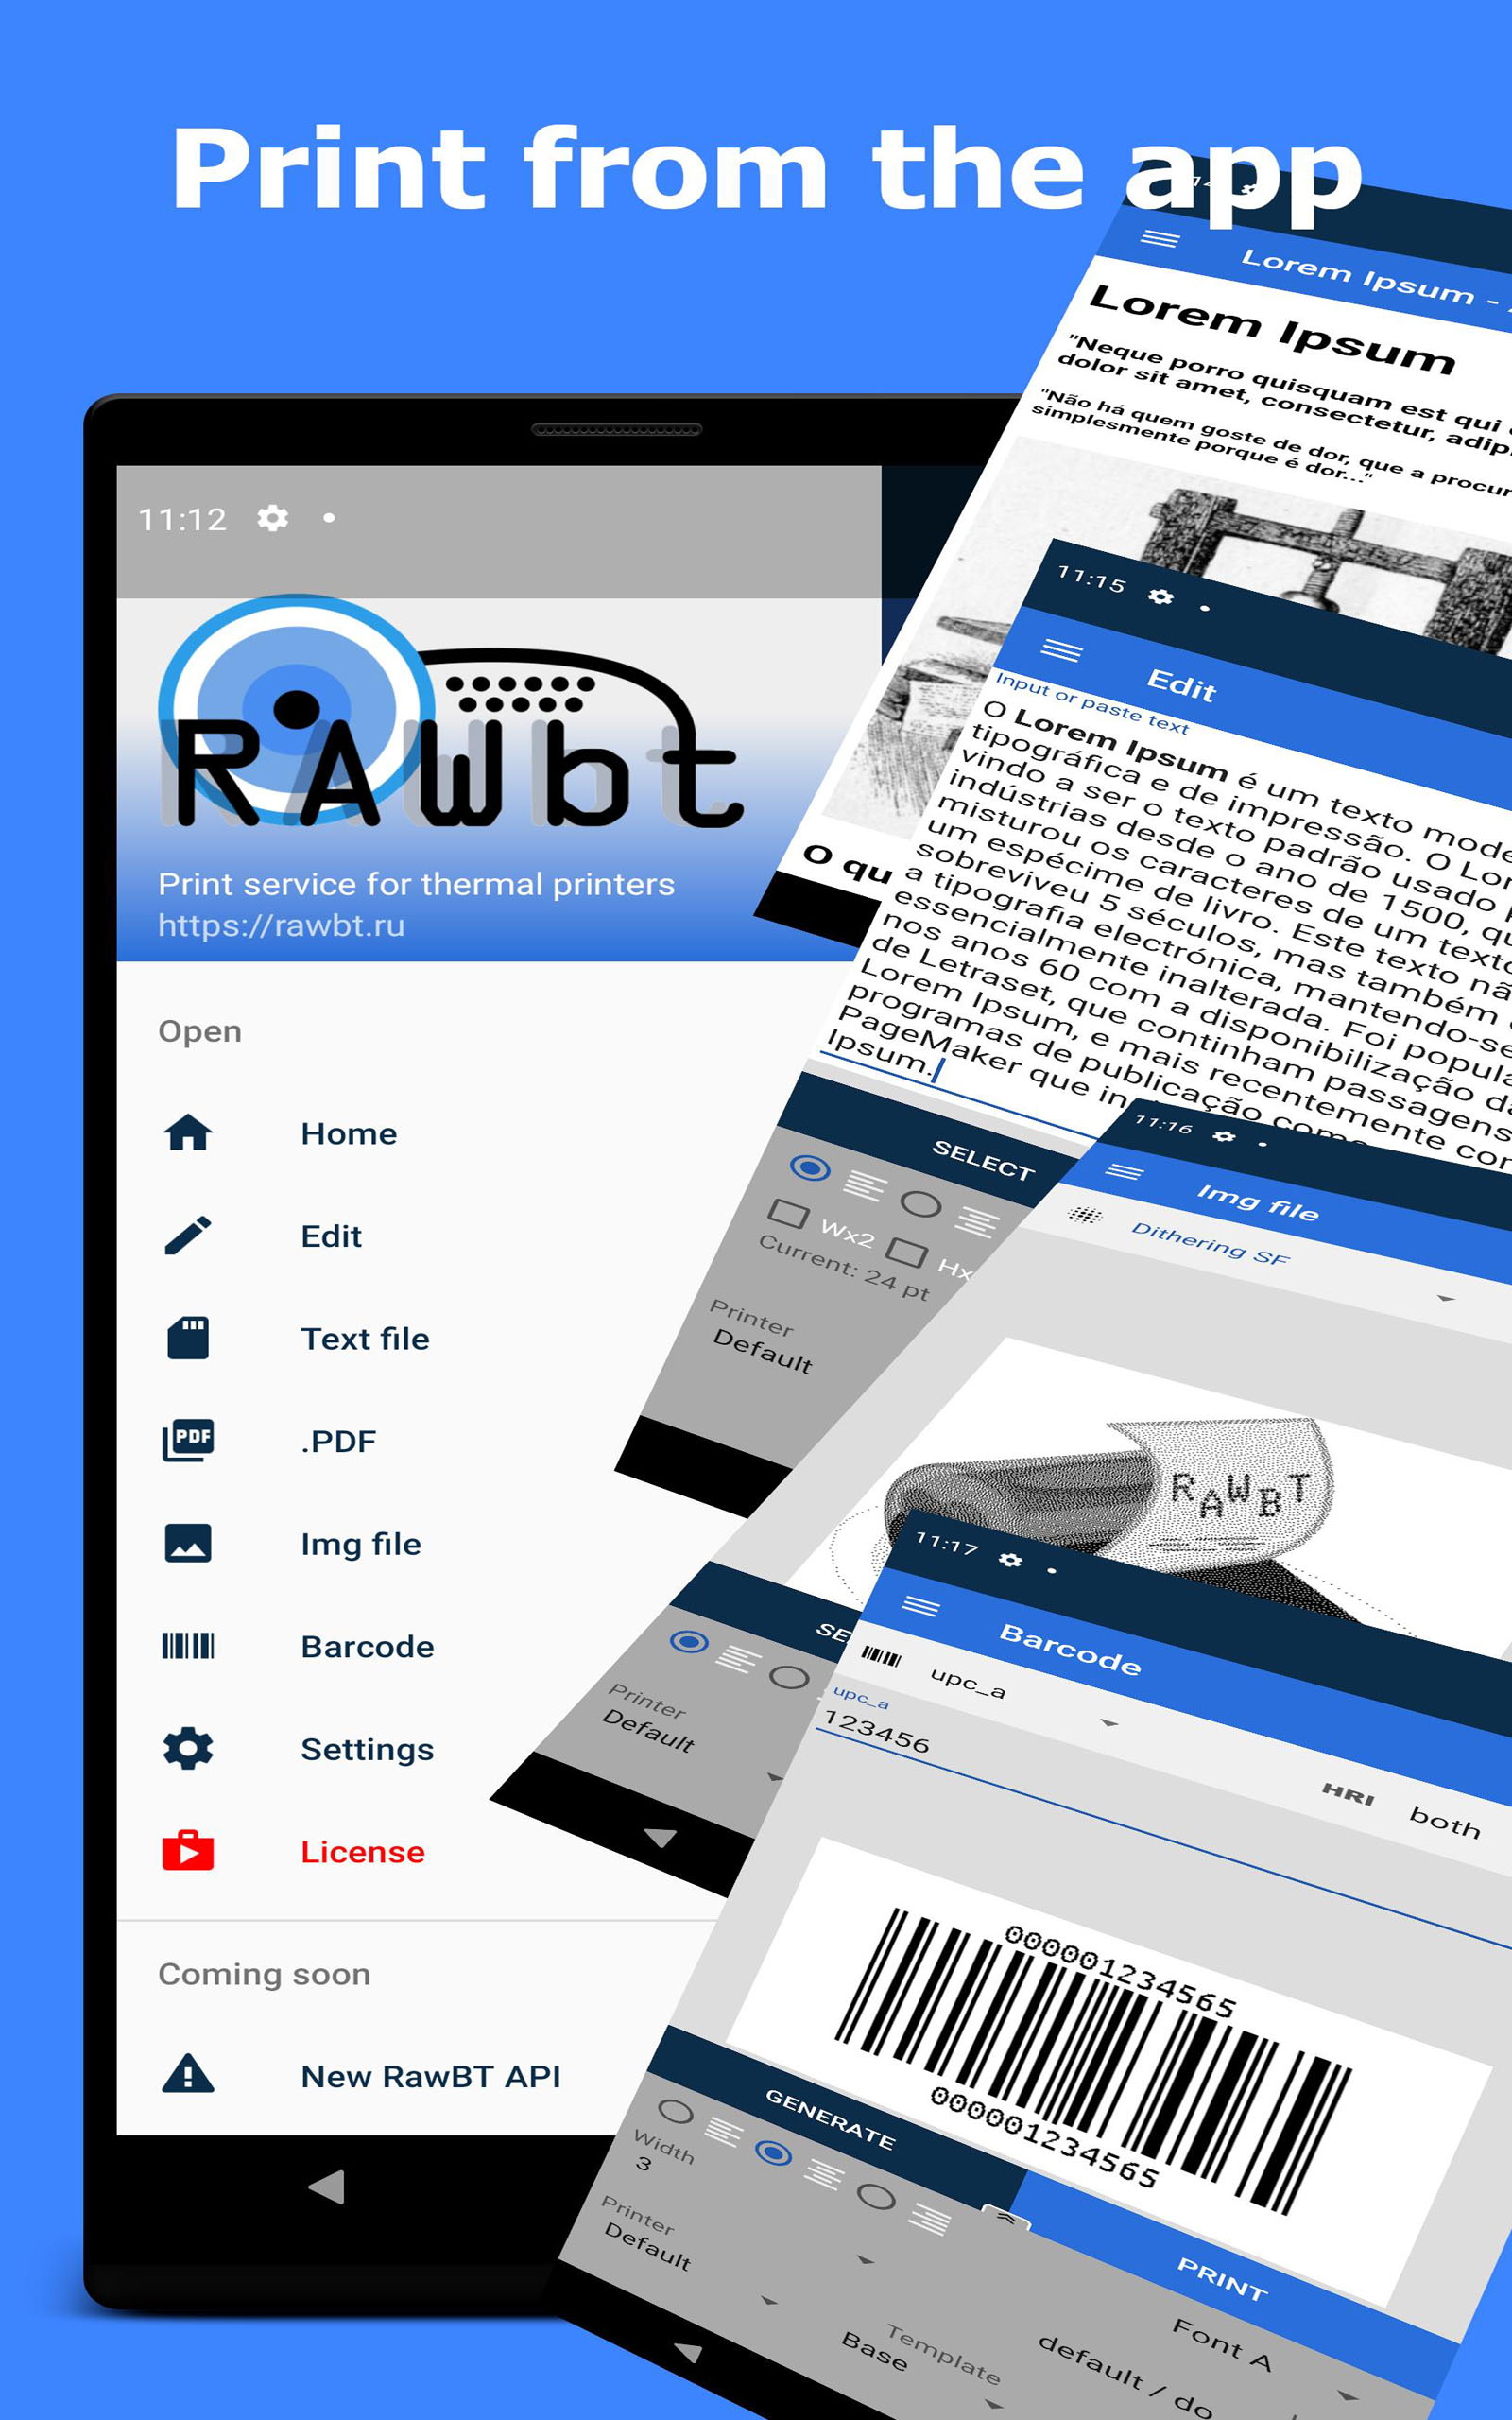 RawBT ESC Pos: Bluetooth, USB, Ethernet, WIFI